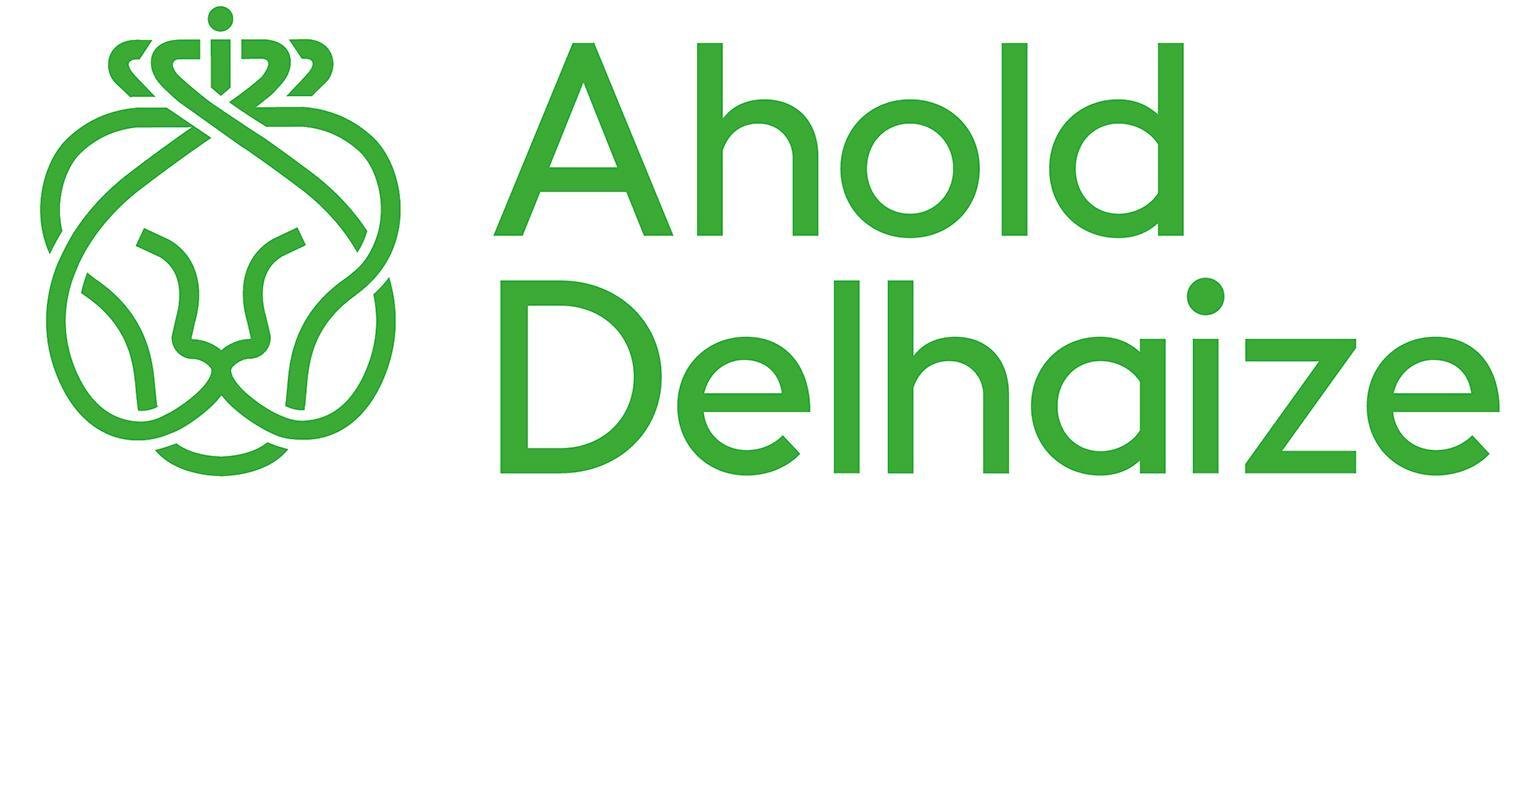 ahold-delhaize-logo1540_1.jpg